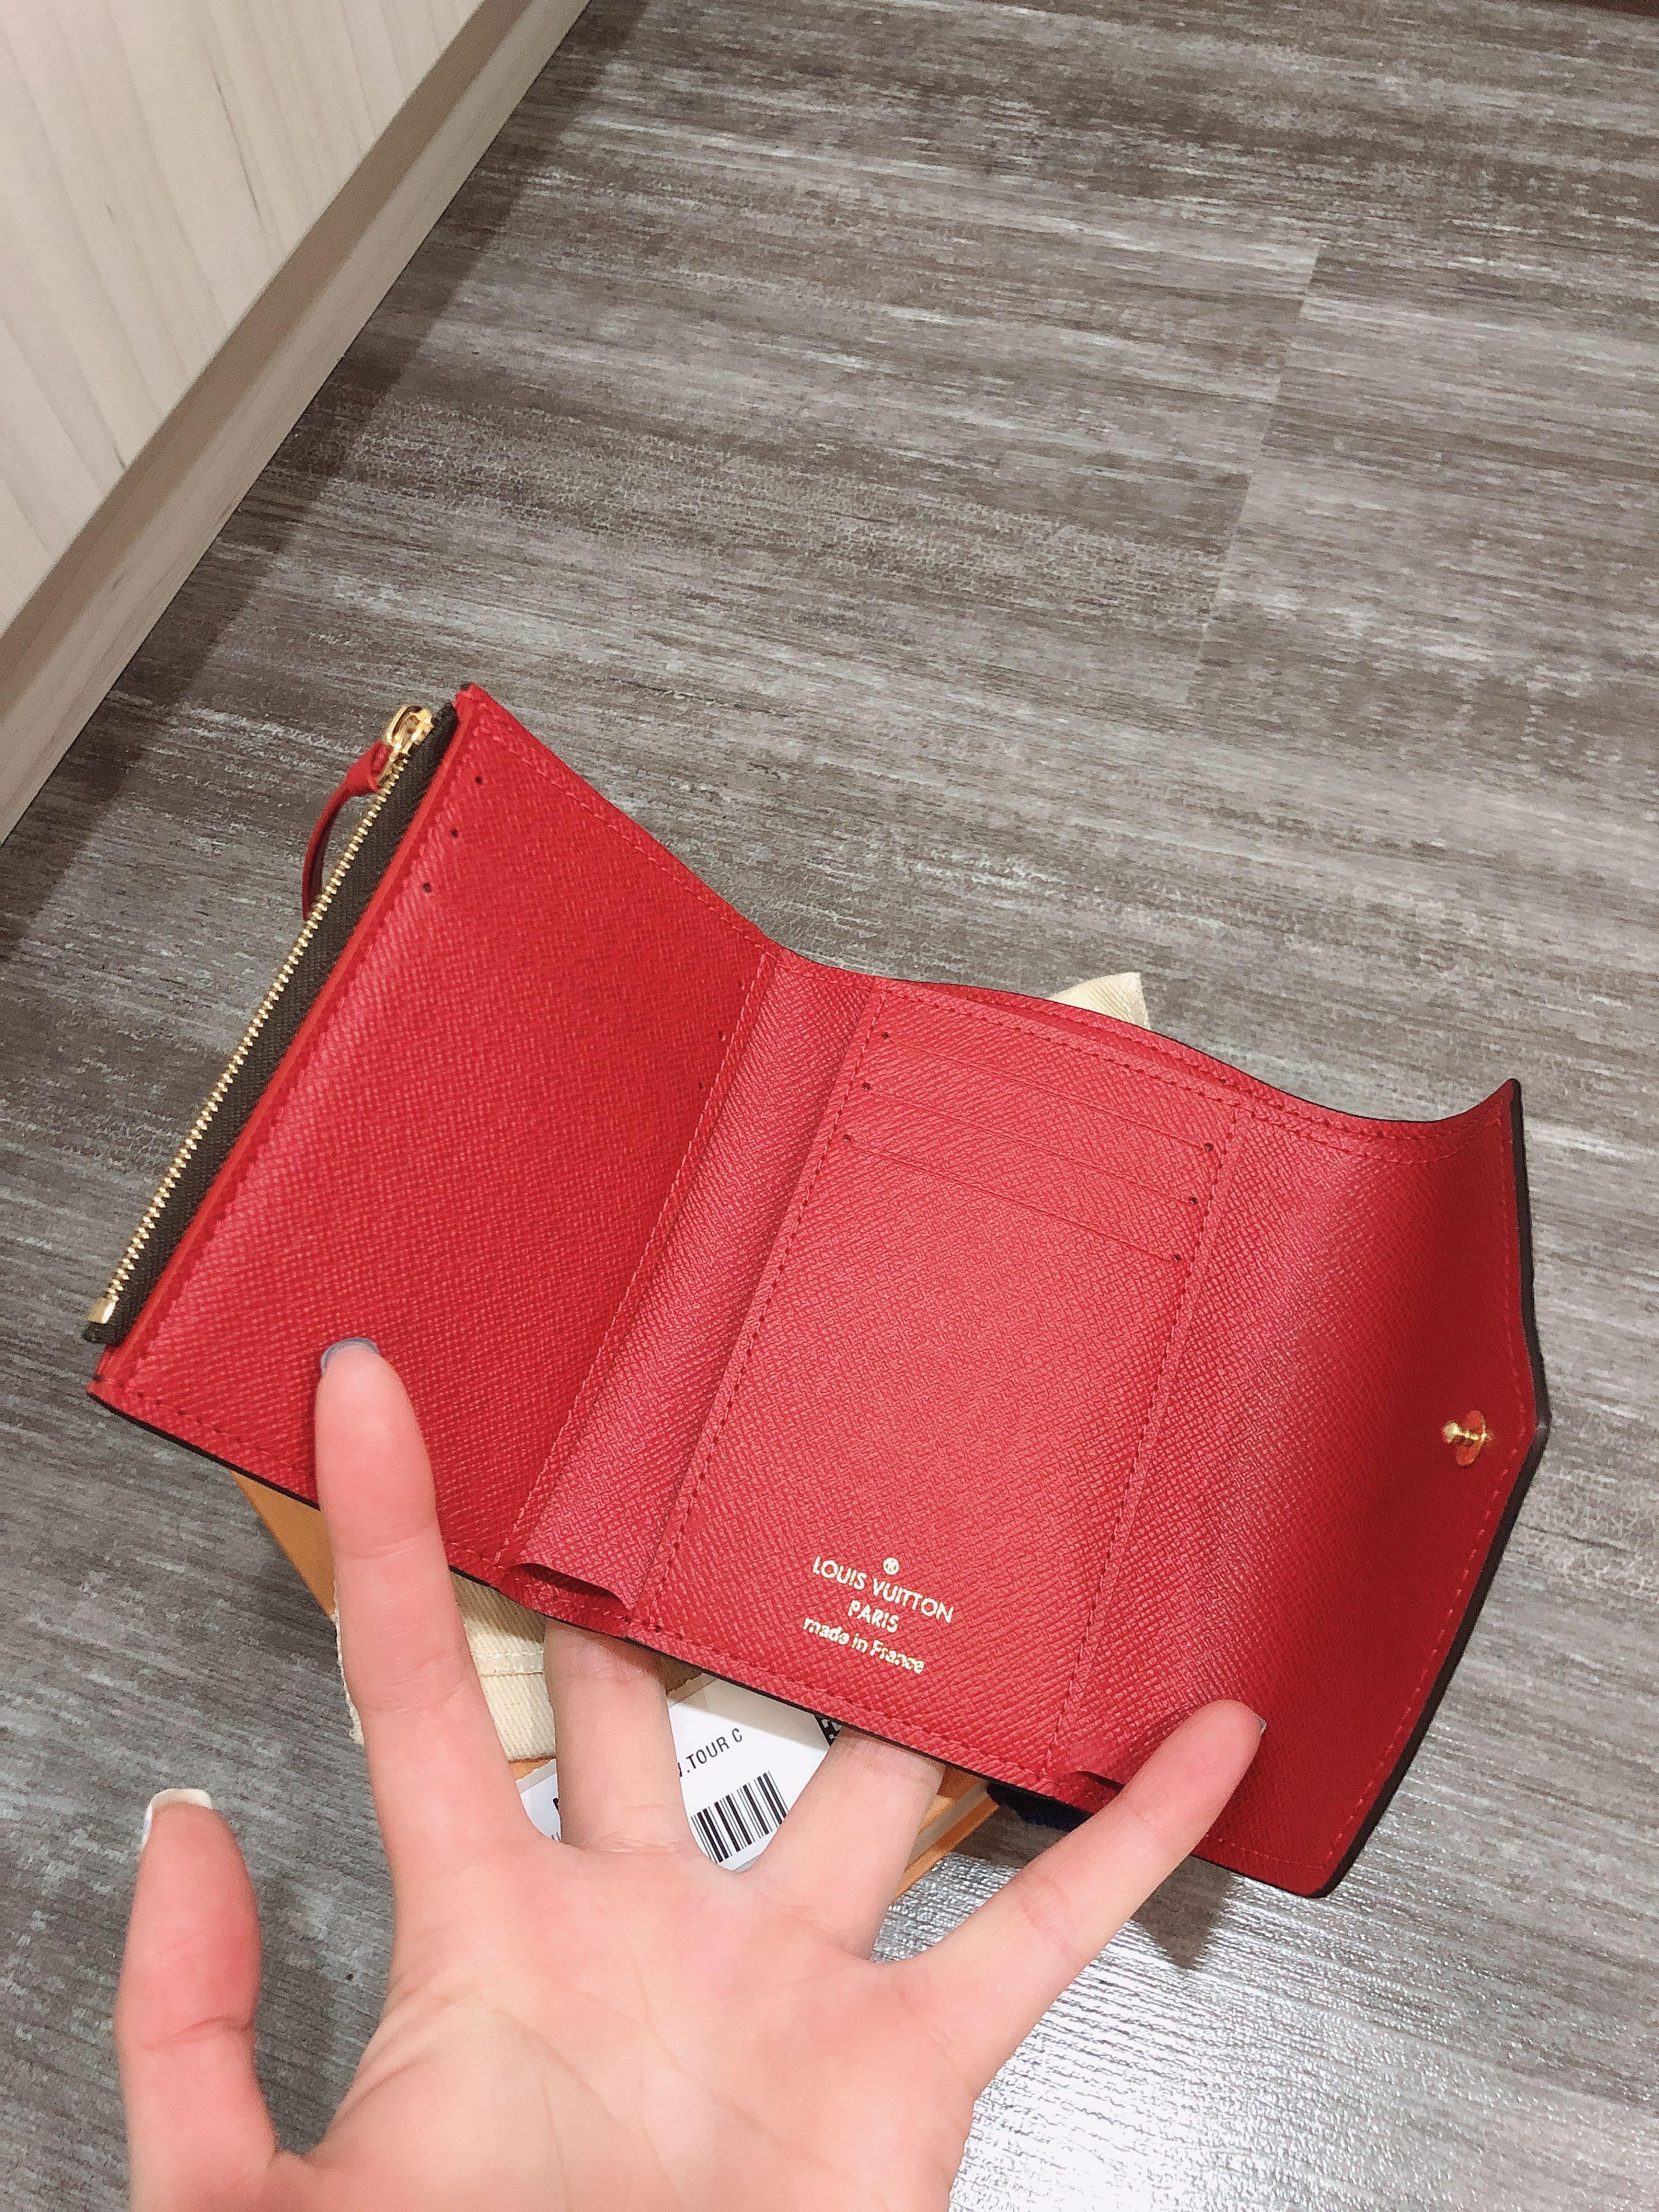 Bag It! - Louis Vuitton World Tour Victorine Wallet. This